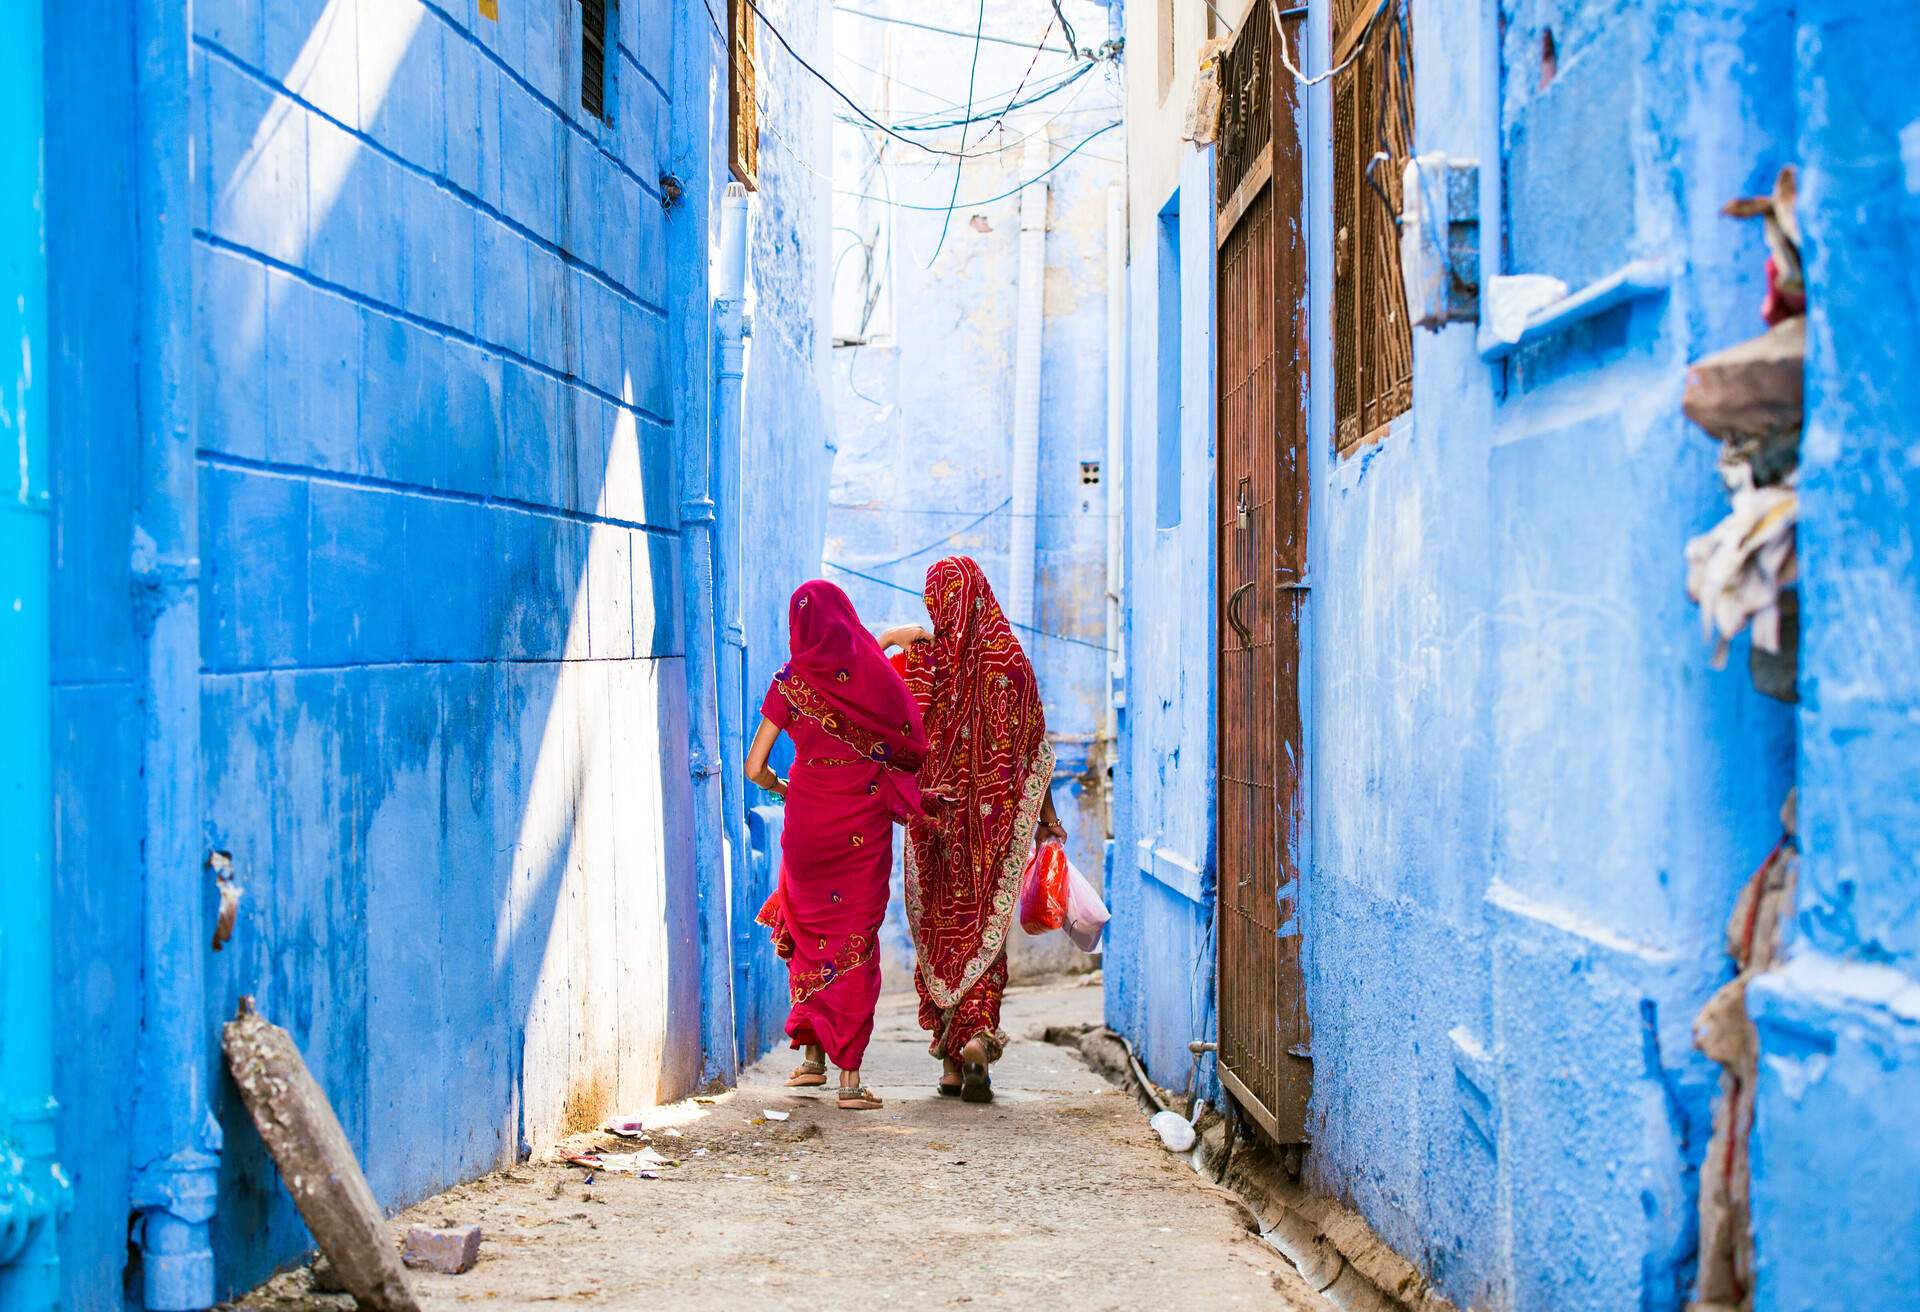 Two women in Indian Saree walking through narrow streets of Jodhpur, Rajasthan, India